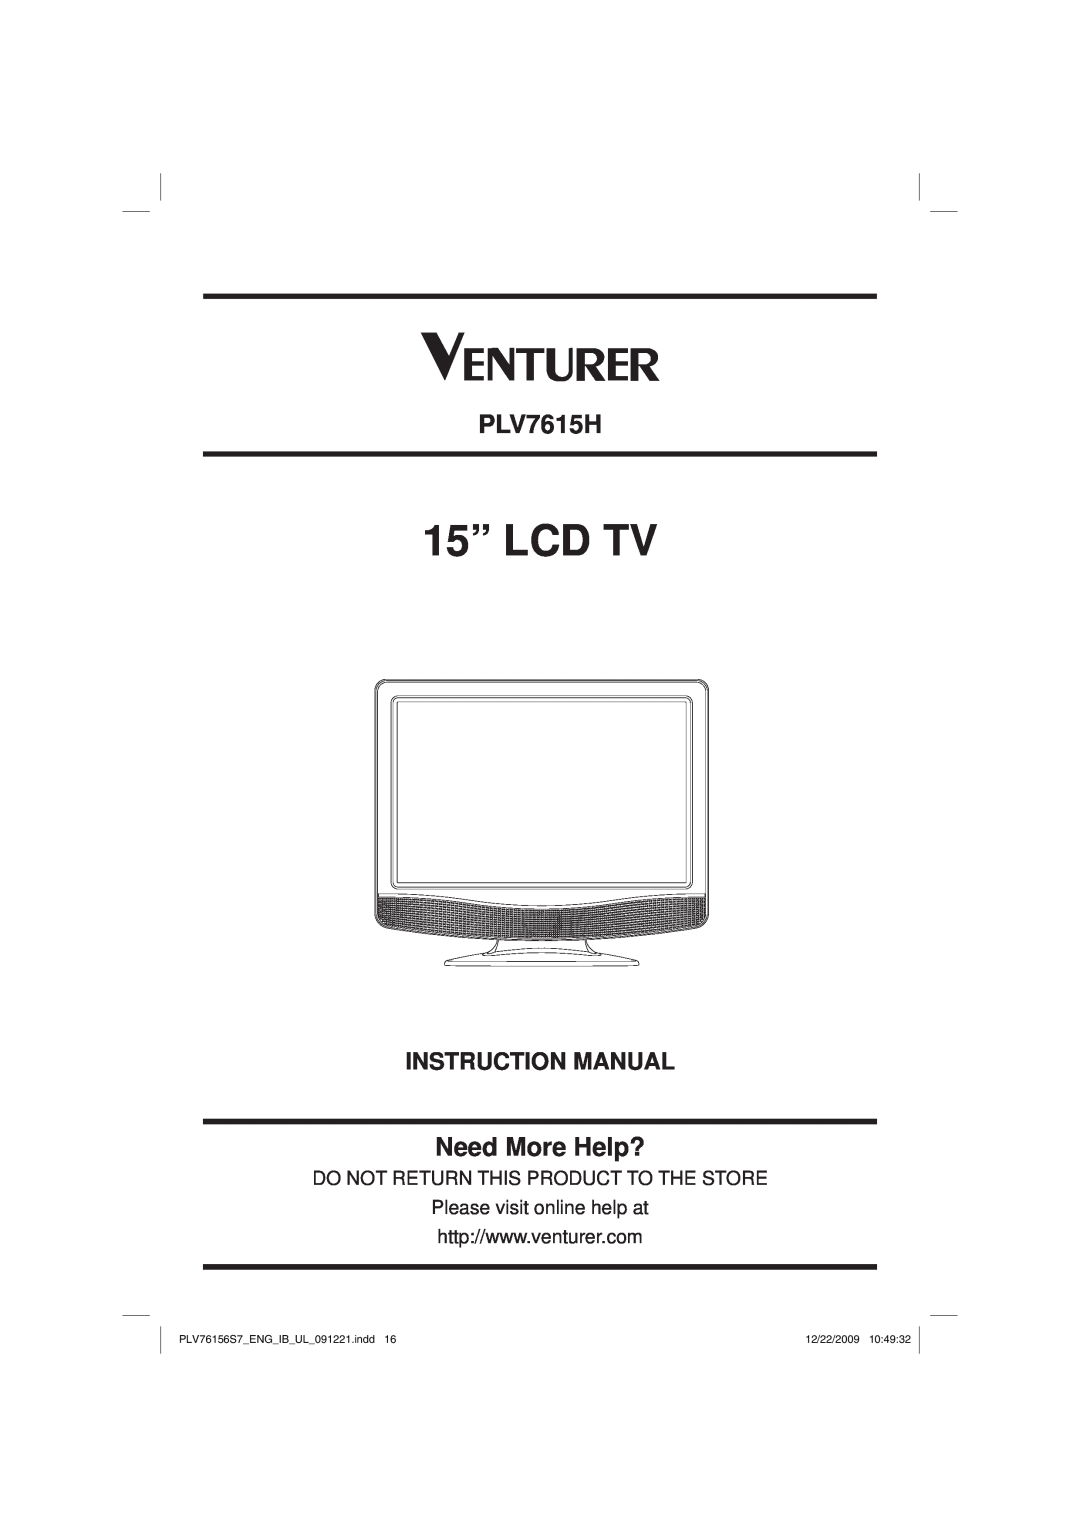 Venturer PLV7615H instruction manual 15” LCD TV, Need More Help?, Instruction Manual, PLV76156S7ENGIBUL091221.indd 